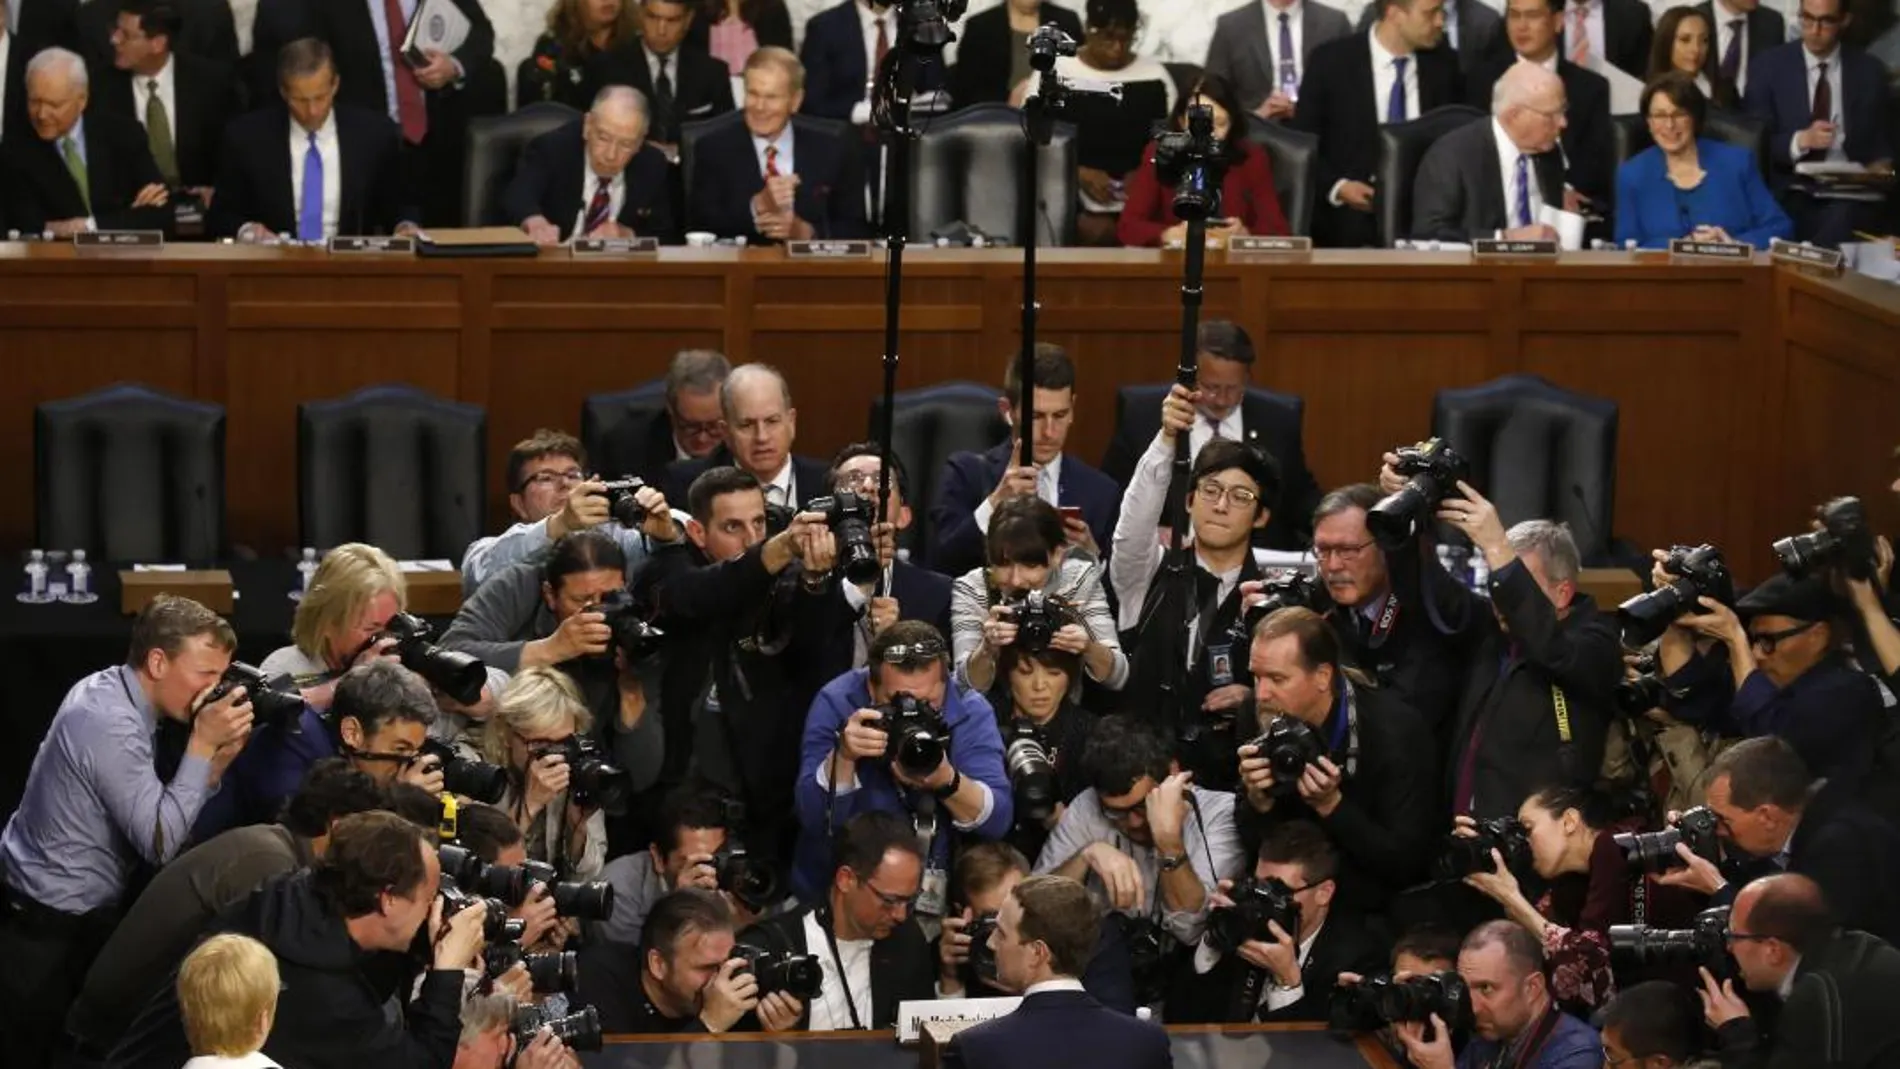 La comparecencia de Zuckerberg despertó una enorme expectación mediática